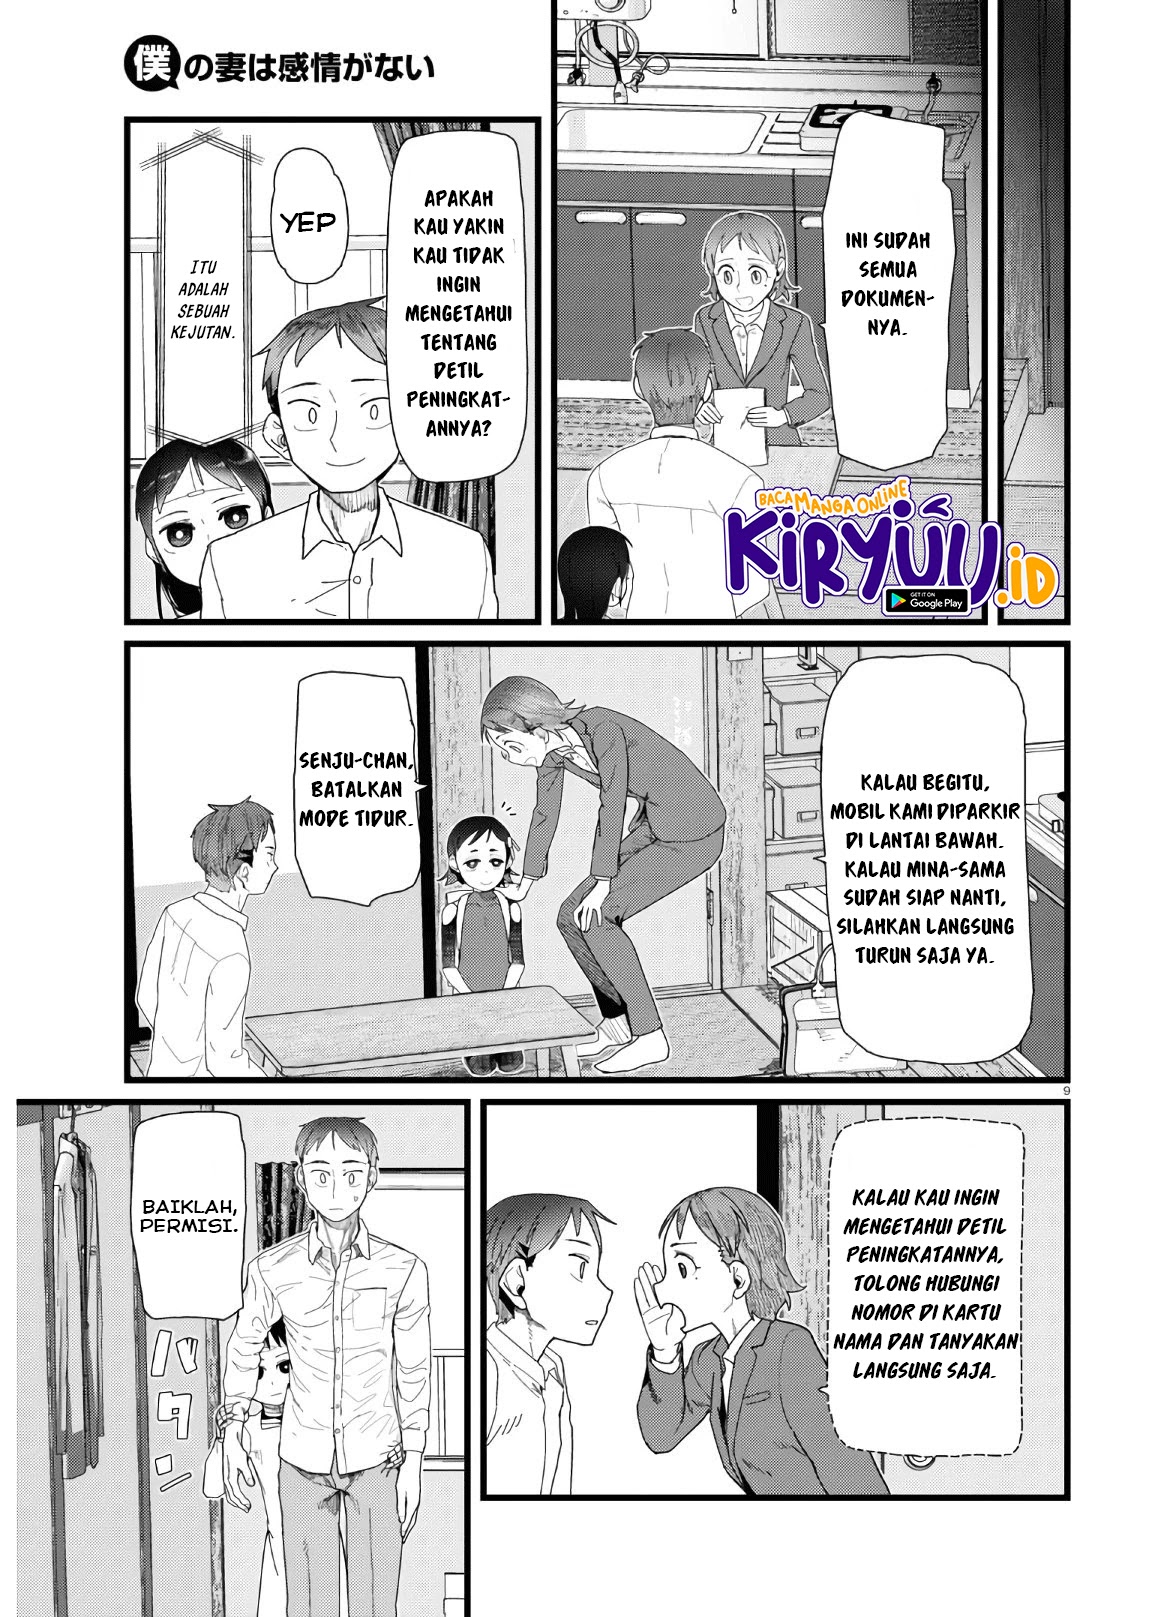 Boku no Tsuma wa Kanjou ga nai Chapter 13 Bahasa Indonesia